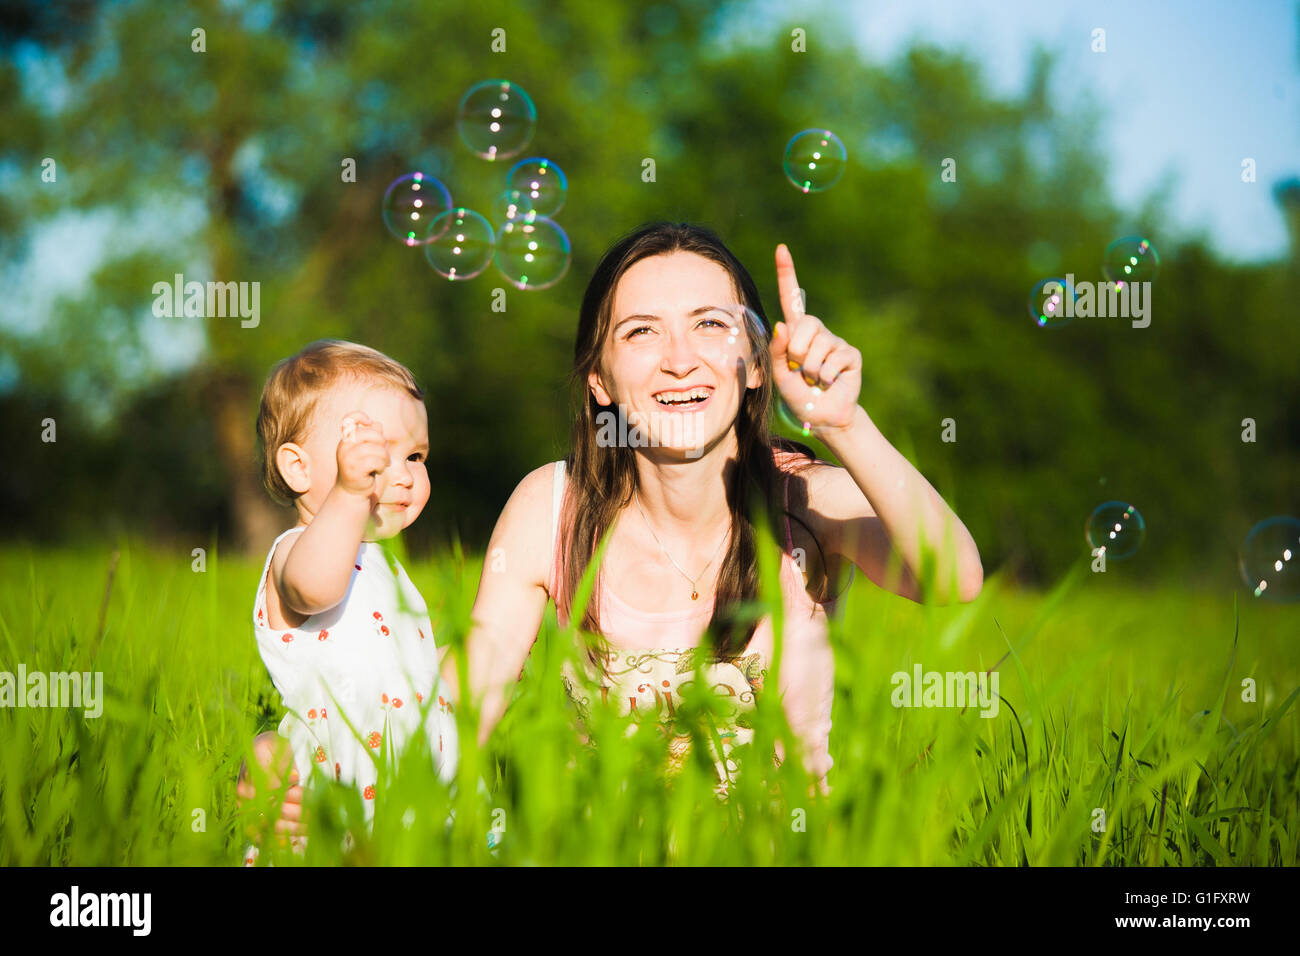 Famiglia giocando insieme all'esterno. Mamma e figlia piccola allegramente la cattura bolle di sapone. Ritratto di felice famiglia gioiosa Foto Stock